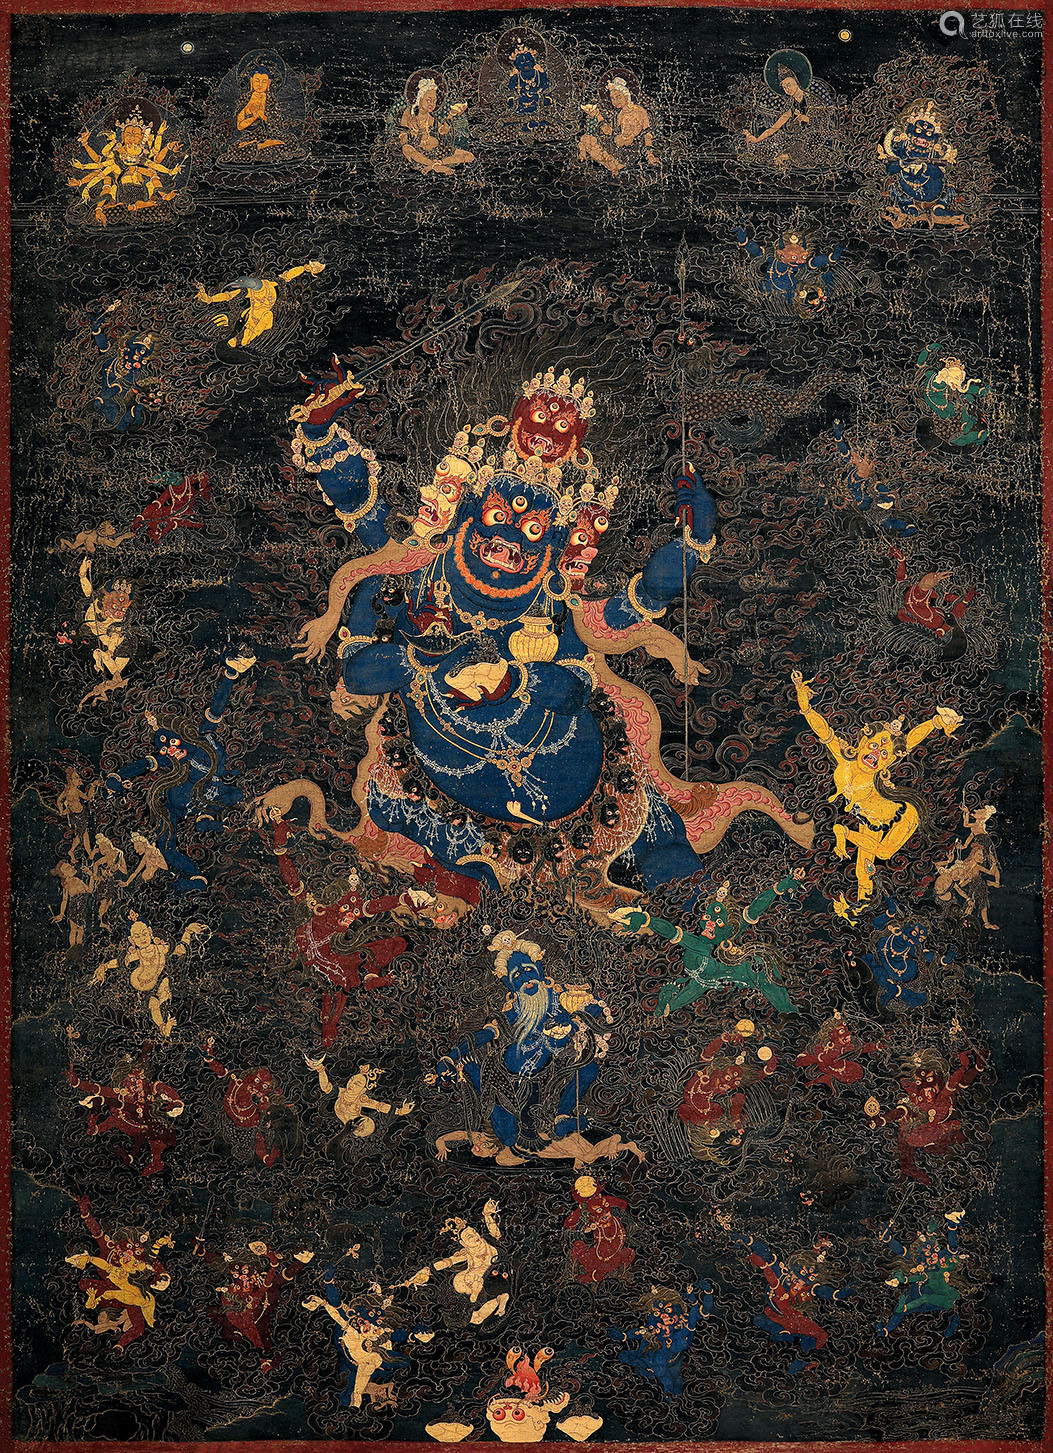 1718世纪四面四臂大黑天唐卡佛教文物其它棉布矿物彩绘